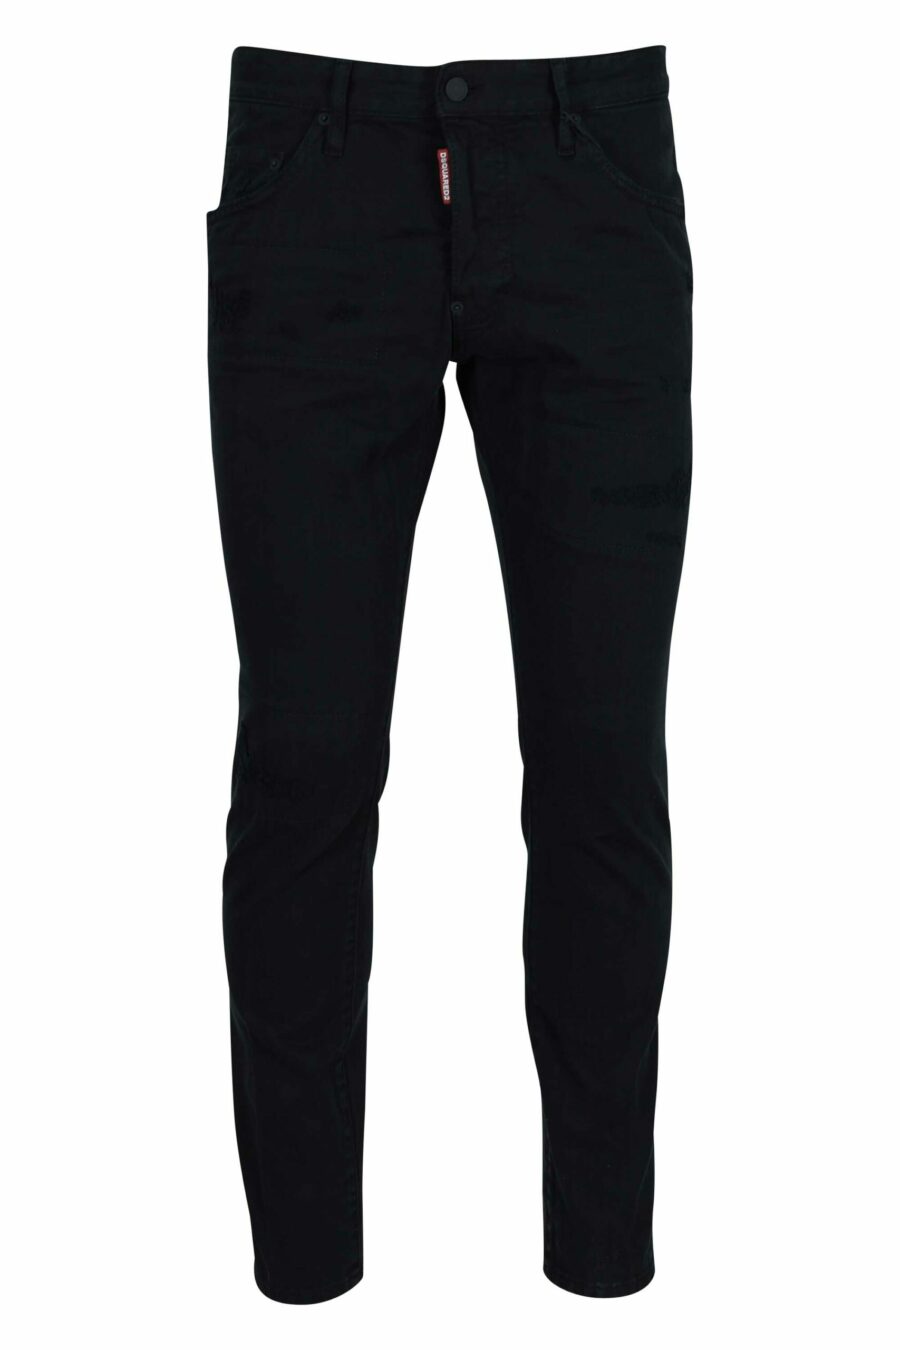 Schwarze "Skater-Jeans" mit Logo - 8054148472320 skaliert